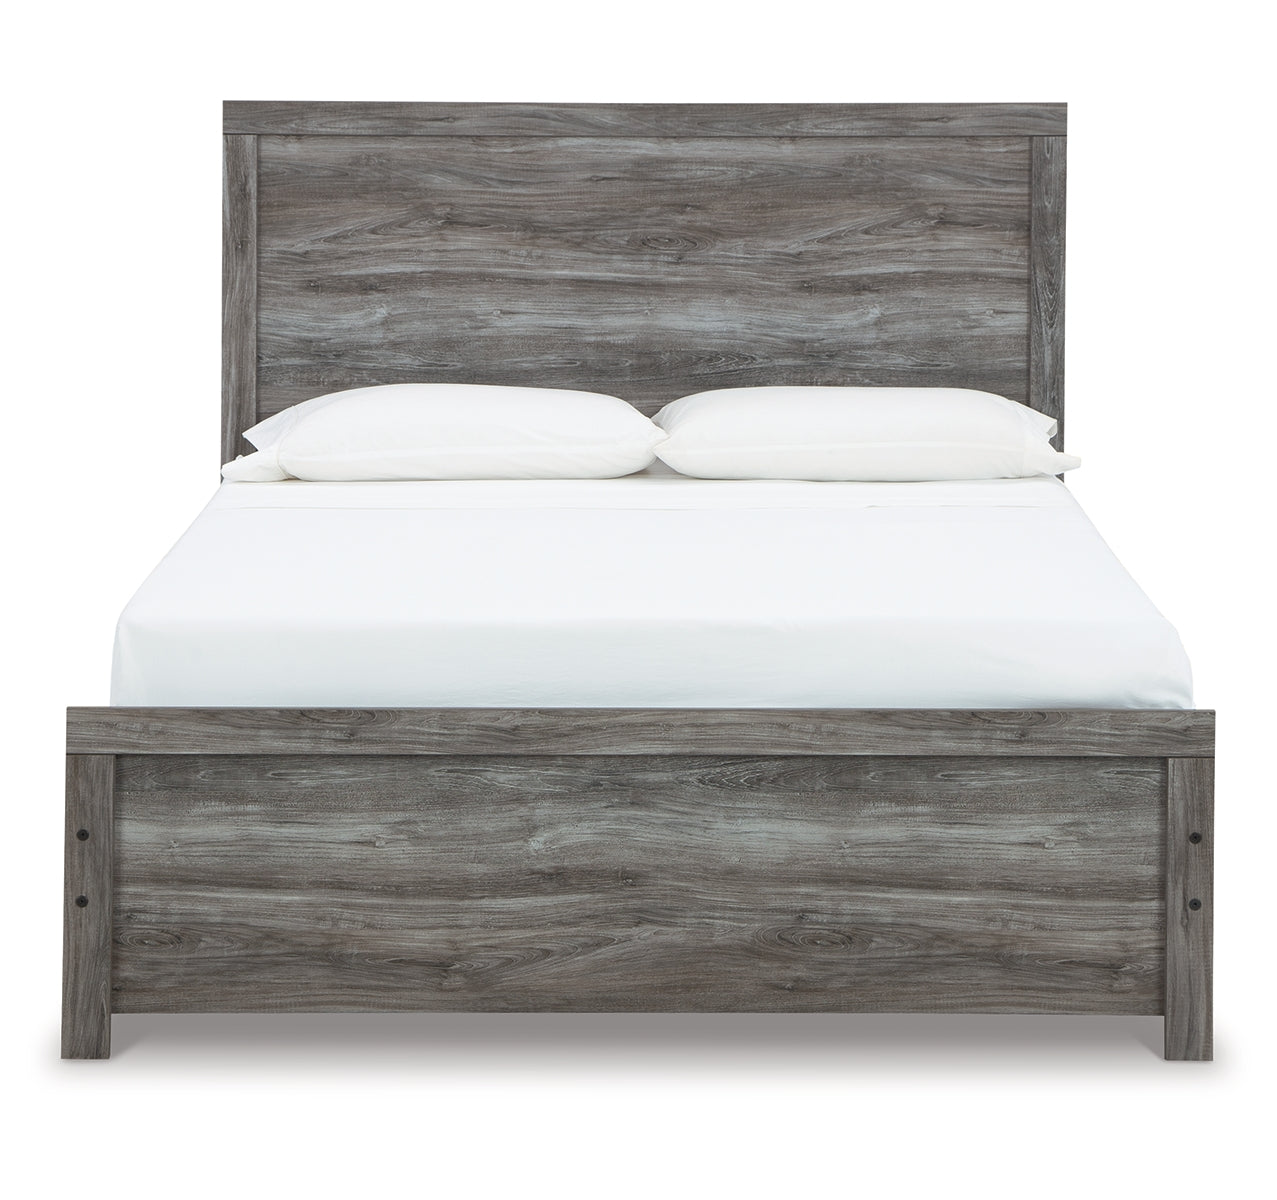 Bronyan Queen Panel Bed with Dresser